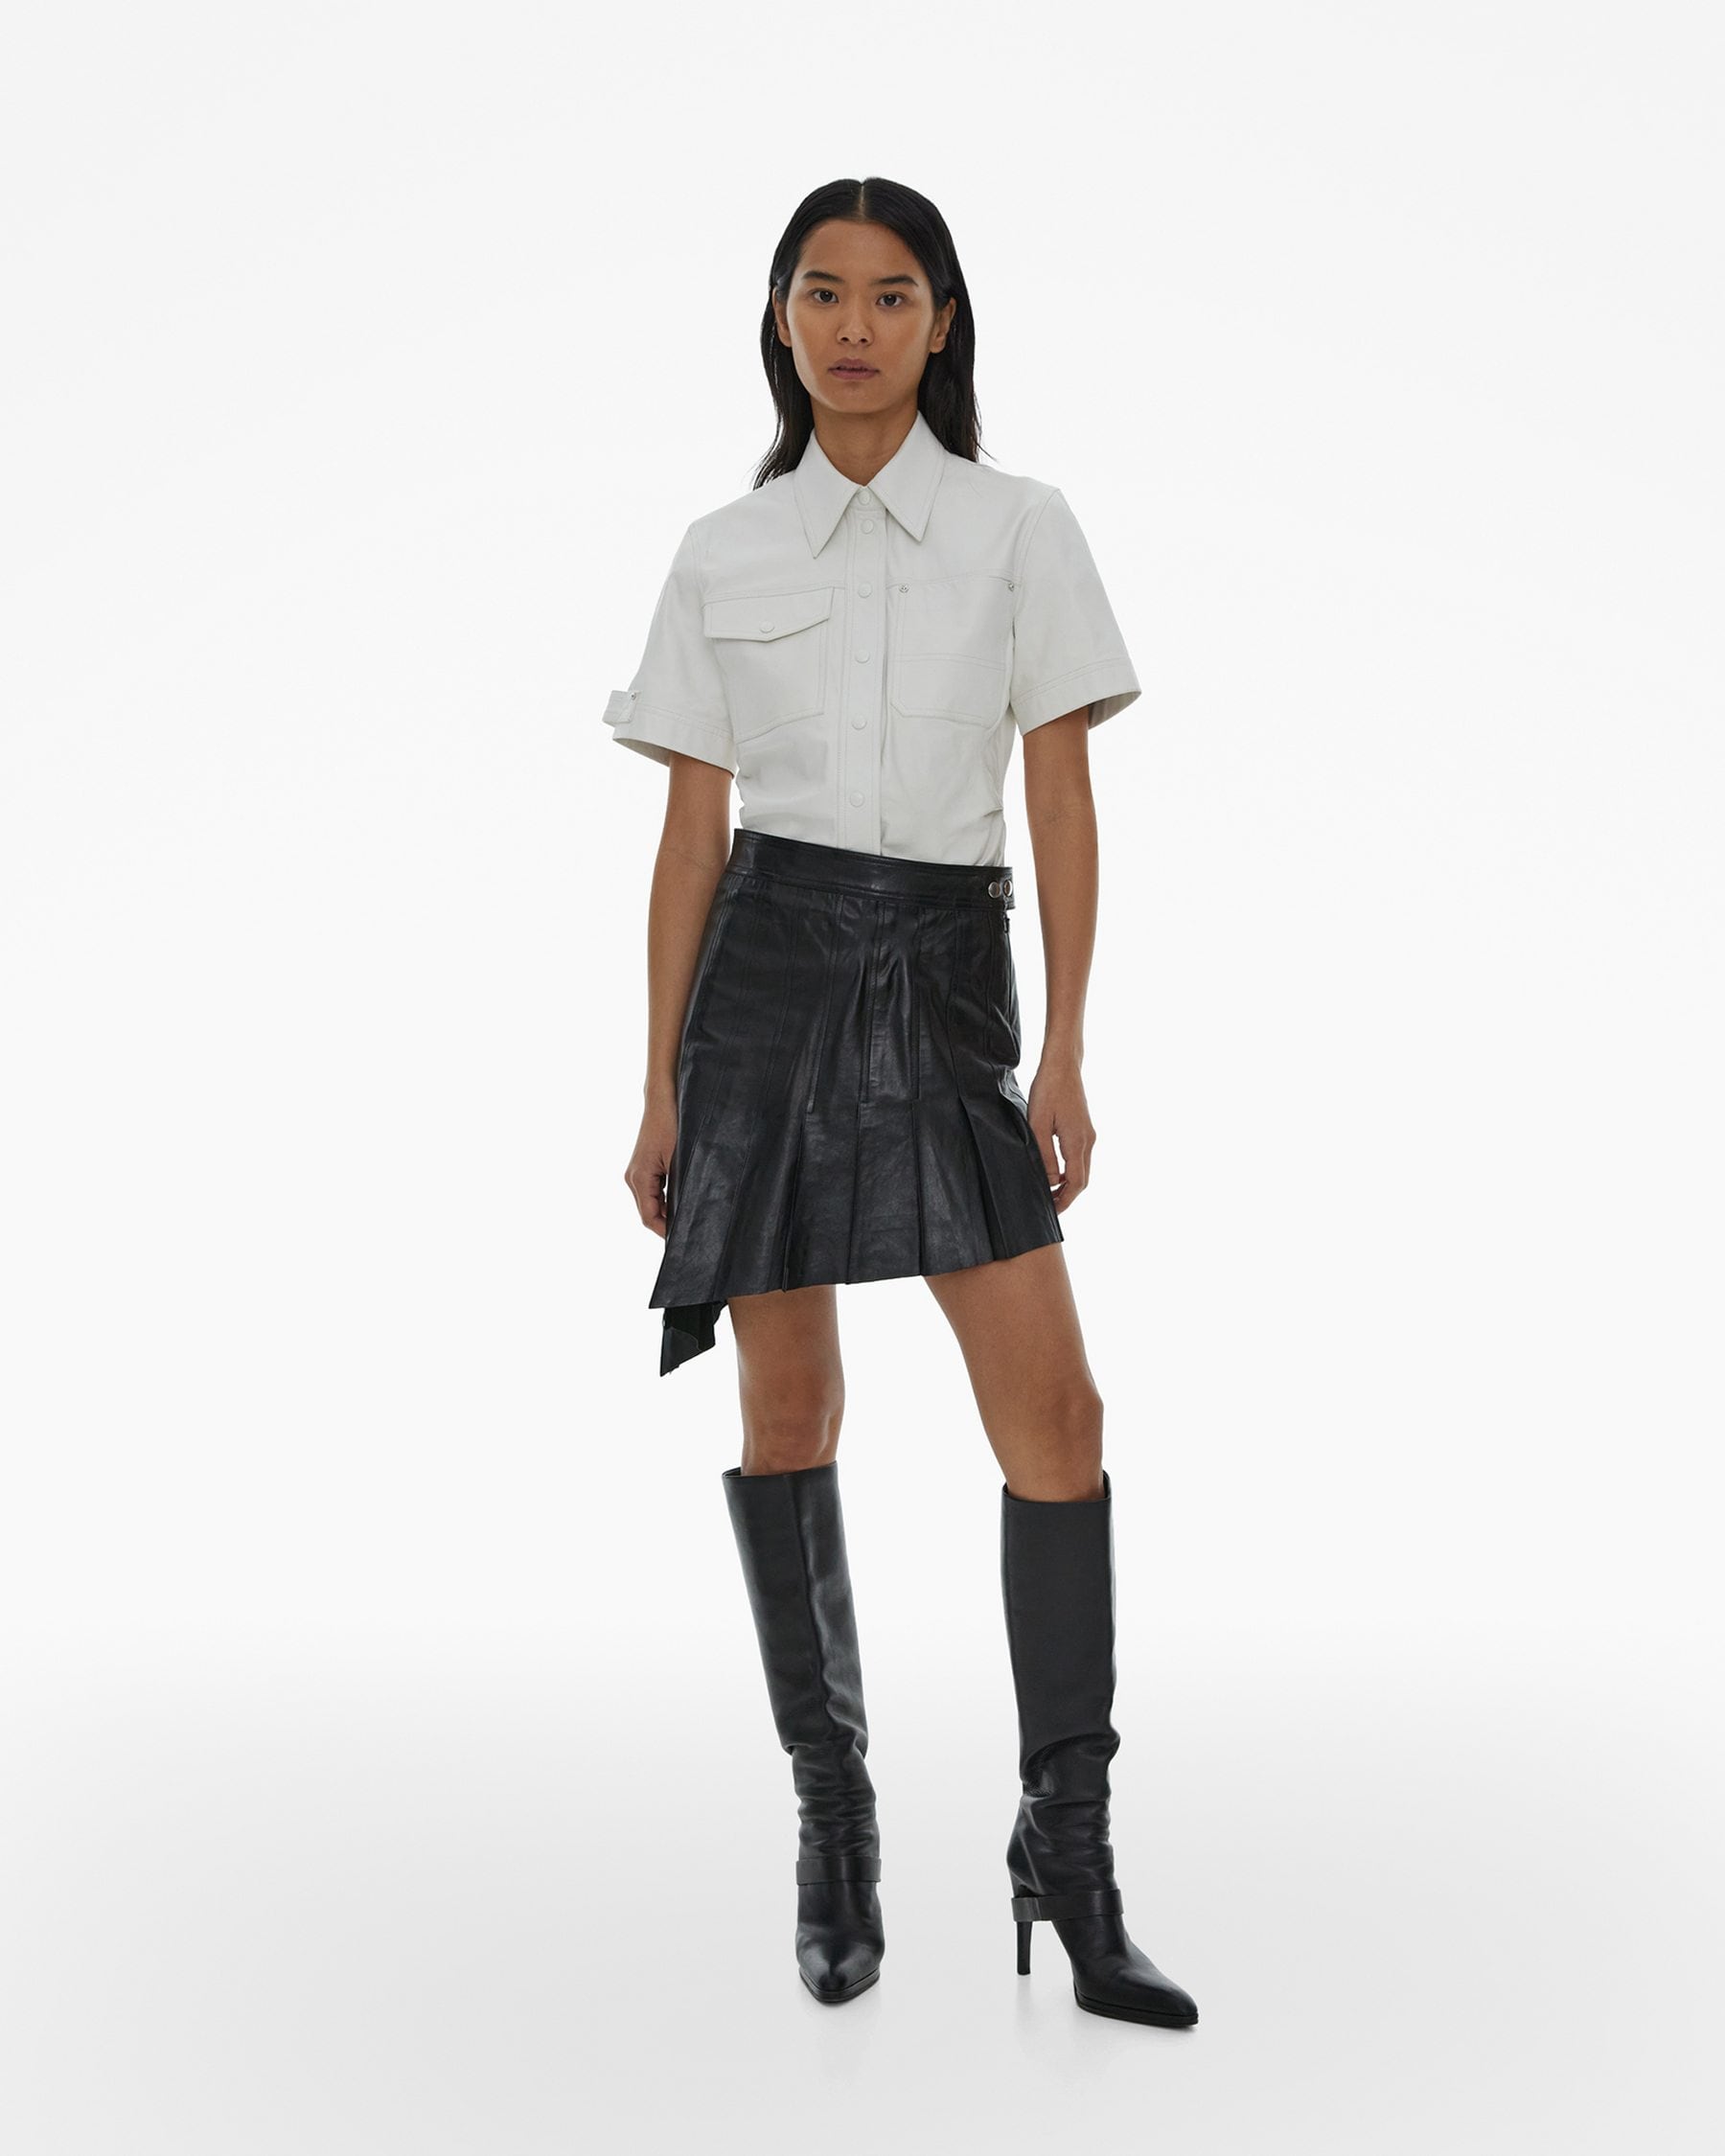 Pleated Asymmetrical Leather Skirt